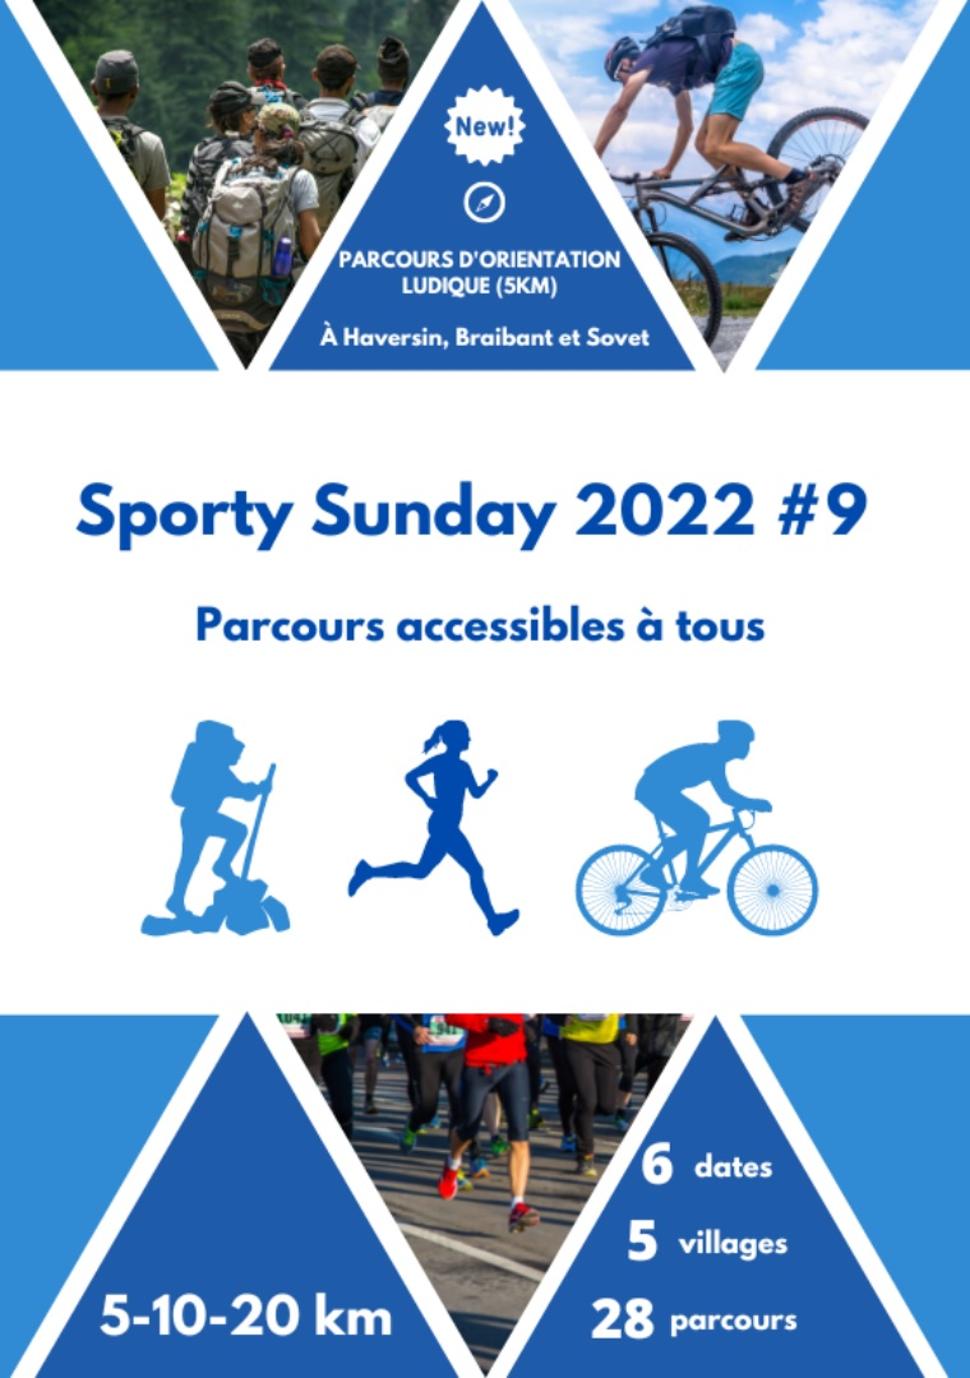 Sporty Sunday 2022